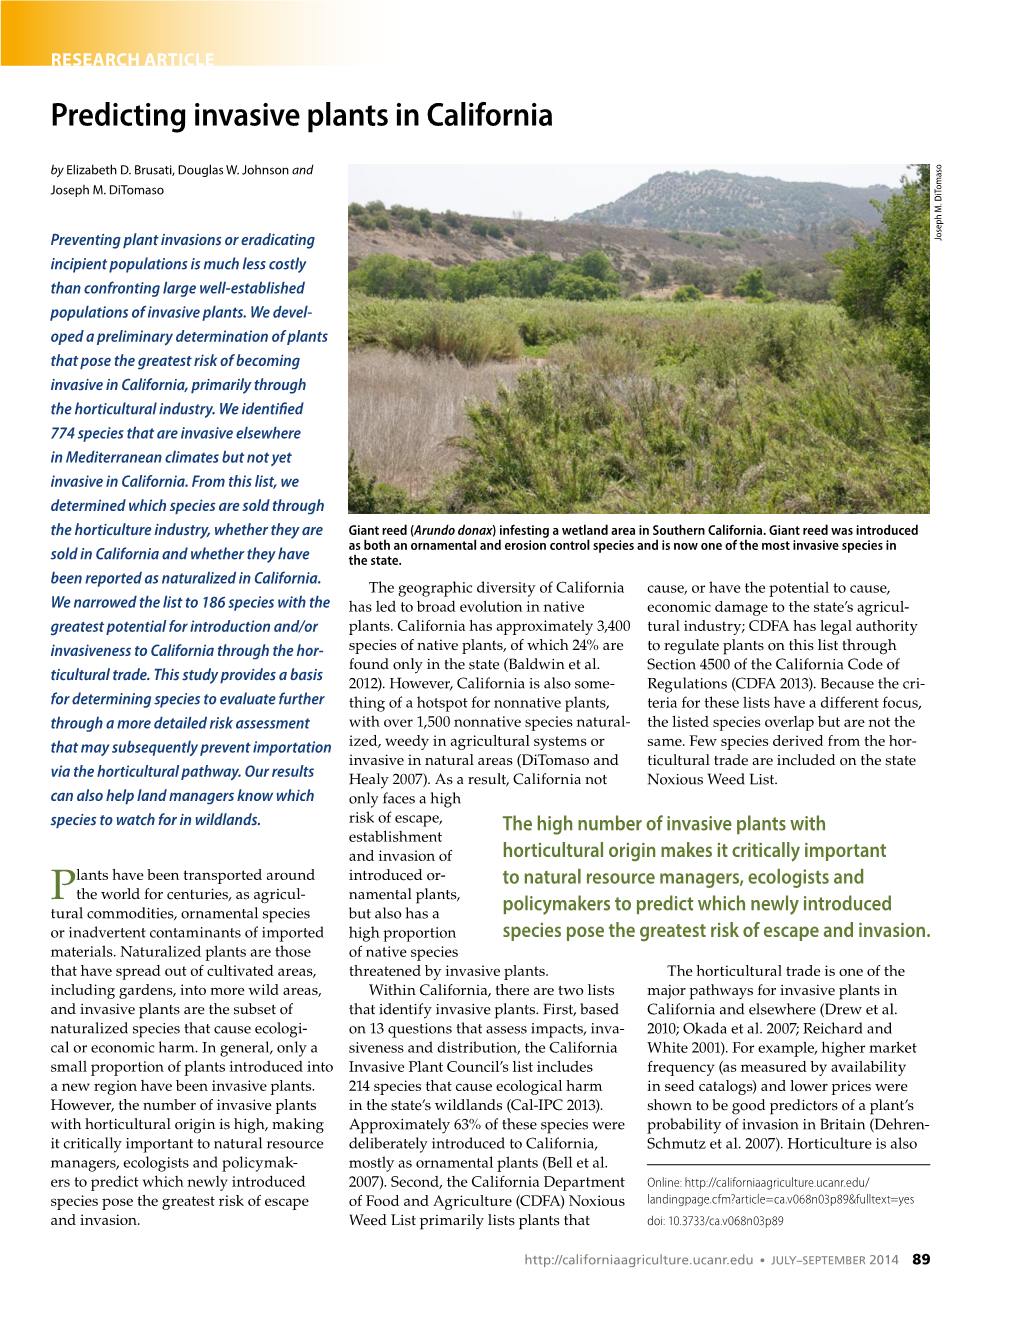 Predicting Invasive Plants in California by Elizabeth D